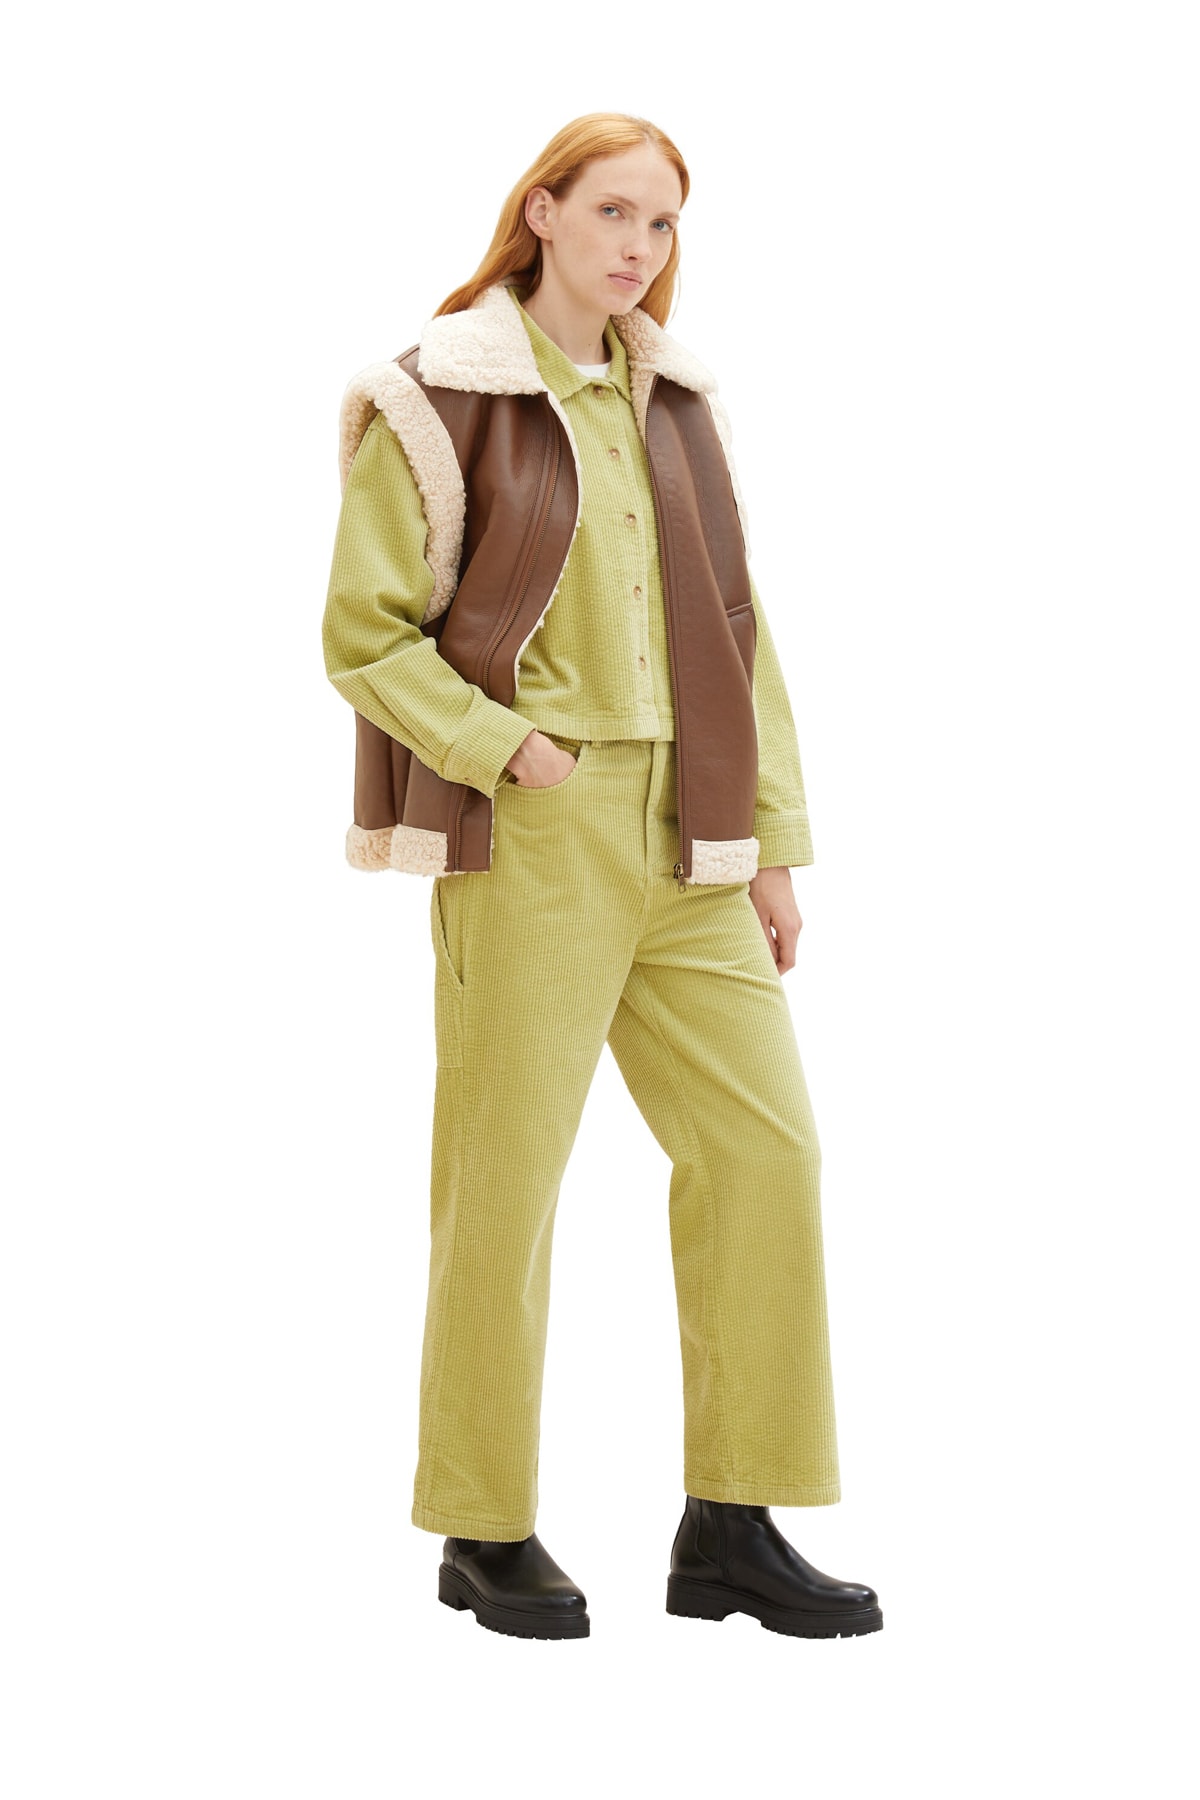 Брюки Женские/Девочки шнуровые брюки Carpender Tom Tailor Denim, оранжевый футболка tom tailor размер xxl оранжевый